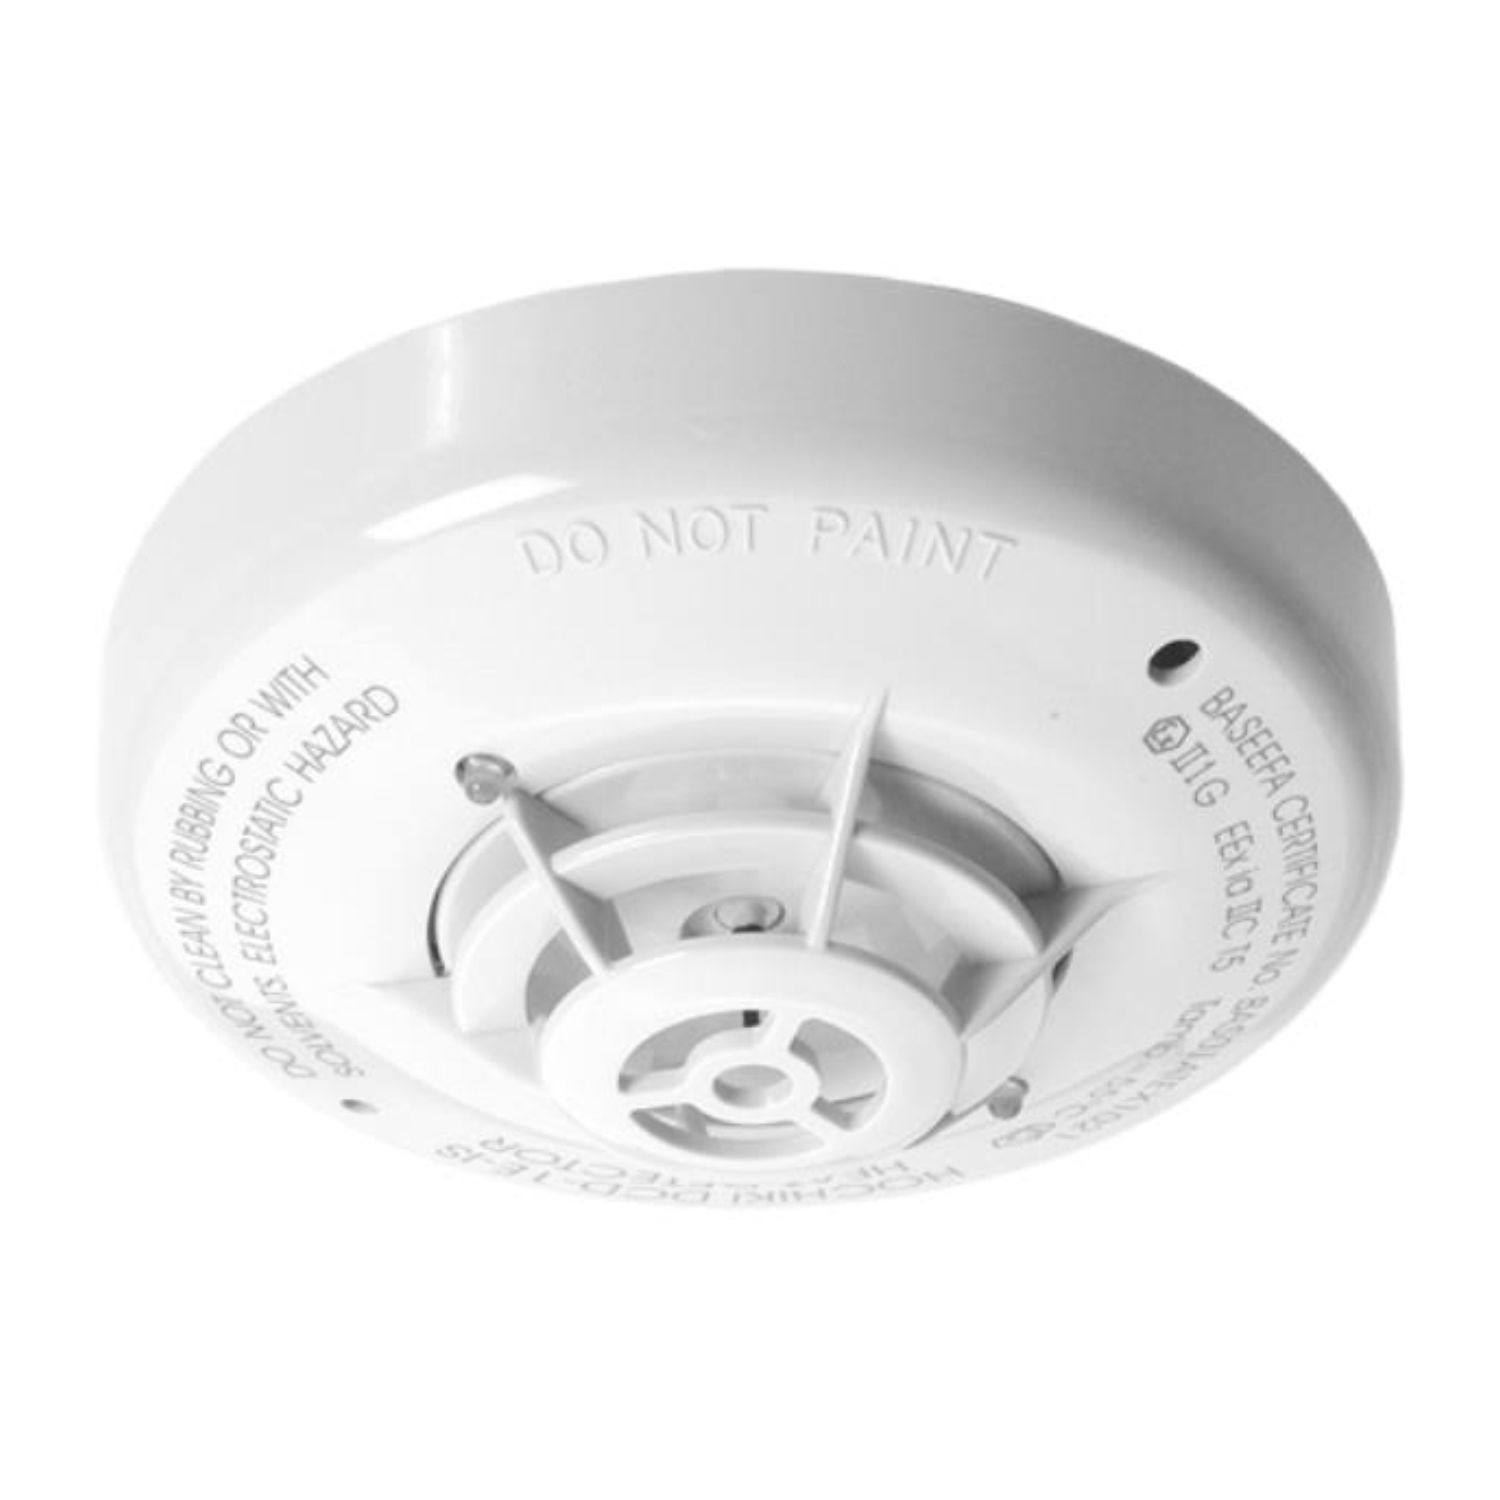 Intrinsically Safe Heat Detector - White case